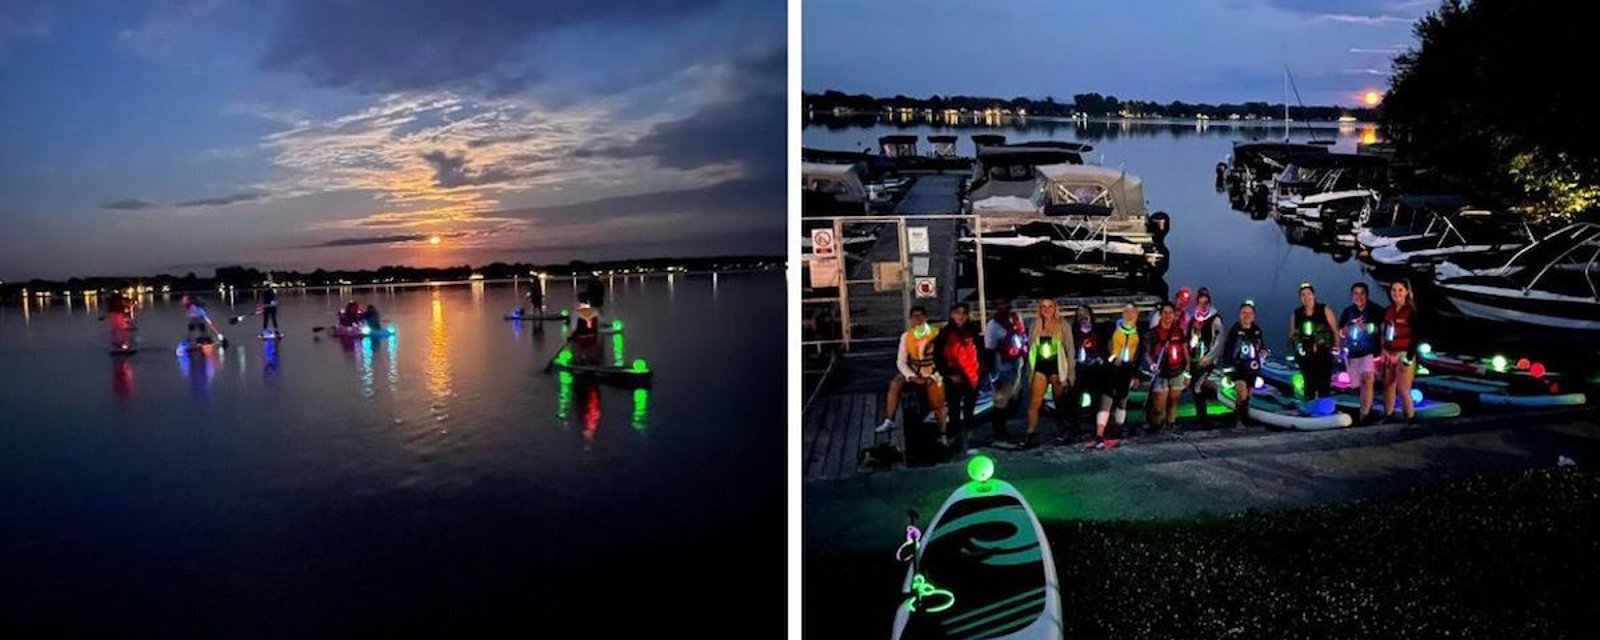 Activité spéciale à ne pas manquer: du paddleboard glow in the dark